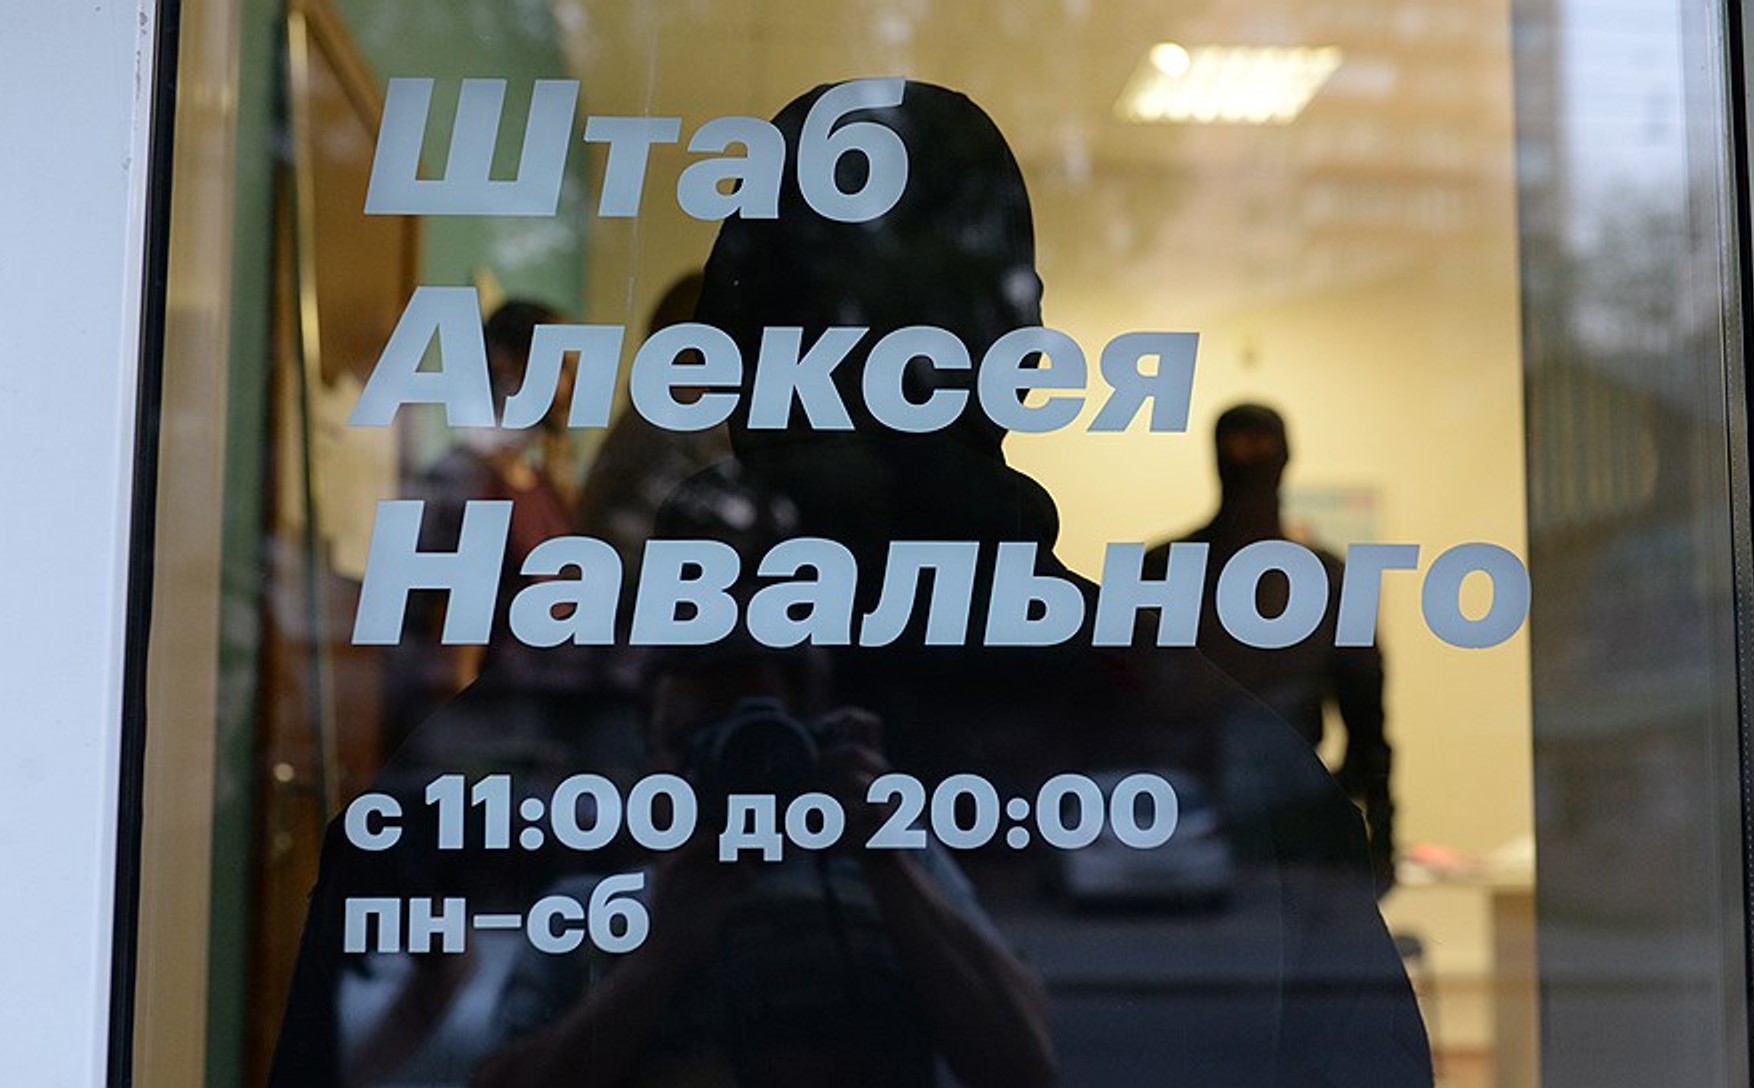 Координатора штабу Навального в Махачкалі, про відкриття якого оголосили напередодні, побили